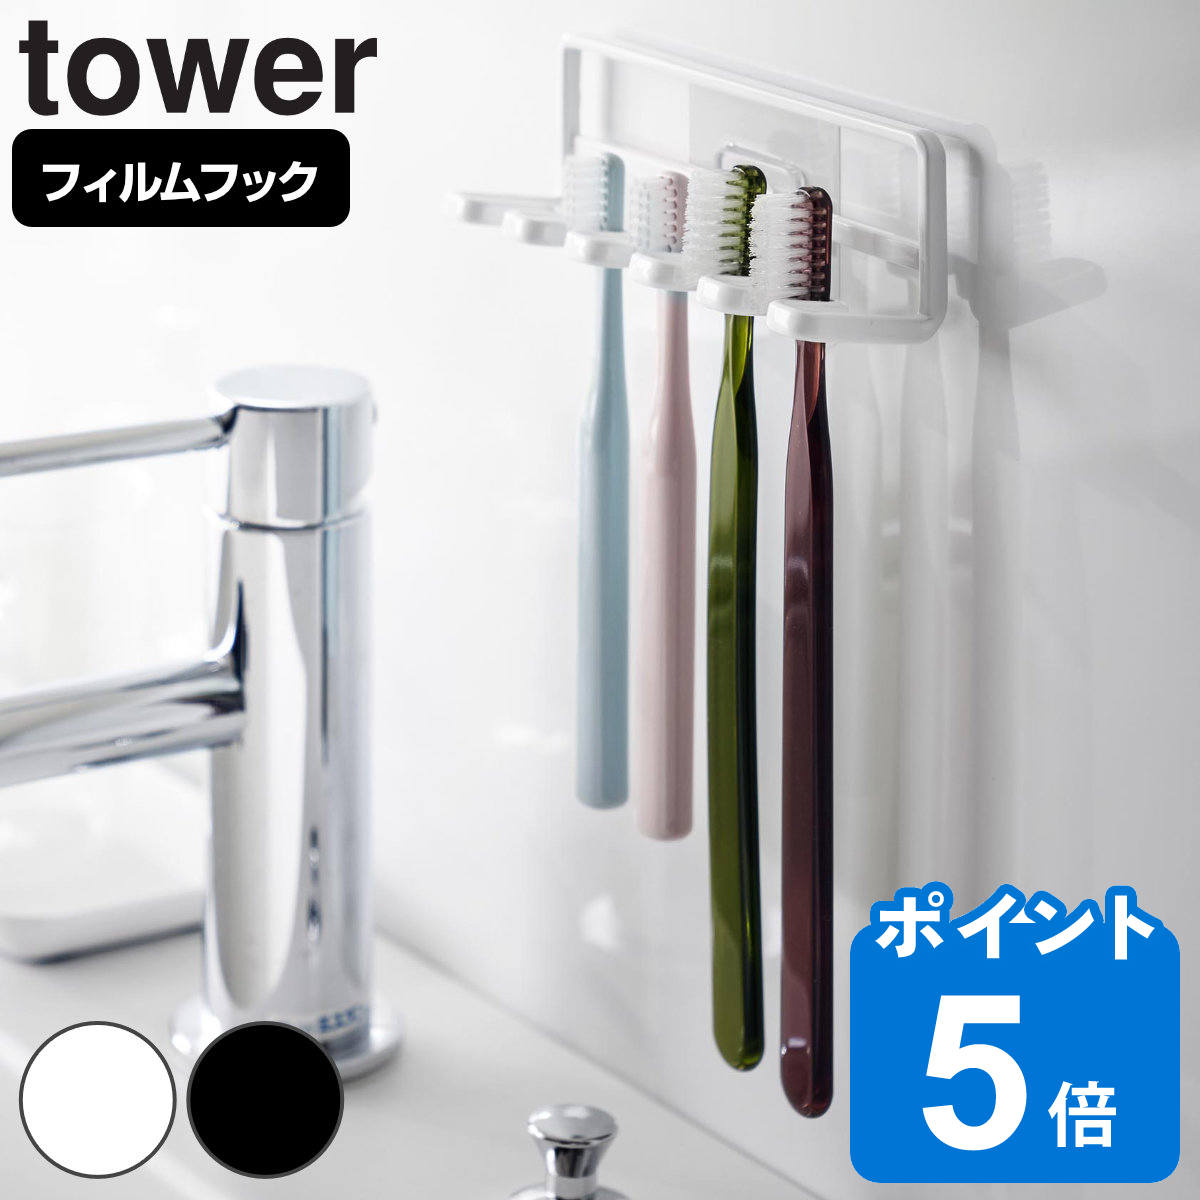 山崎実業 tower フィルムフック 歯ブラシホルダー タワー 5連